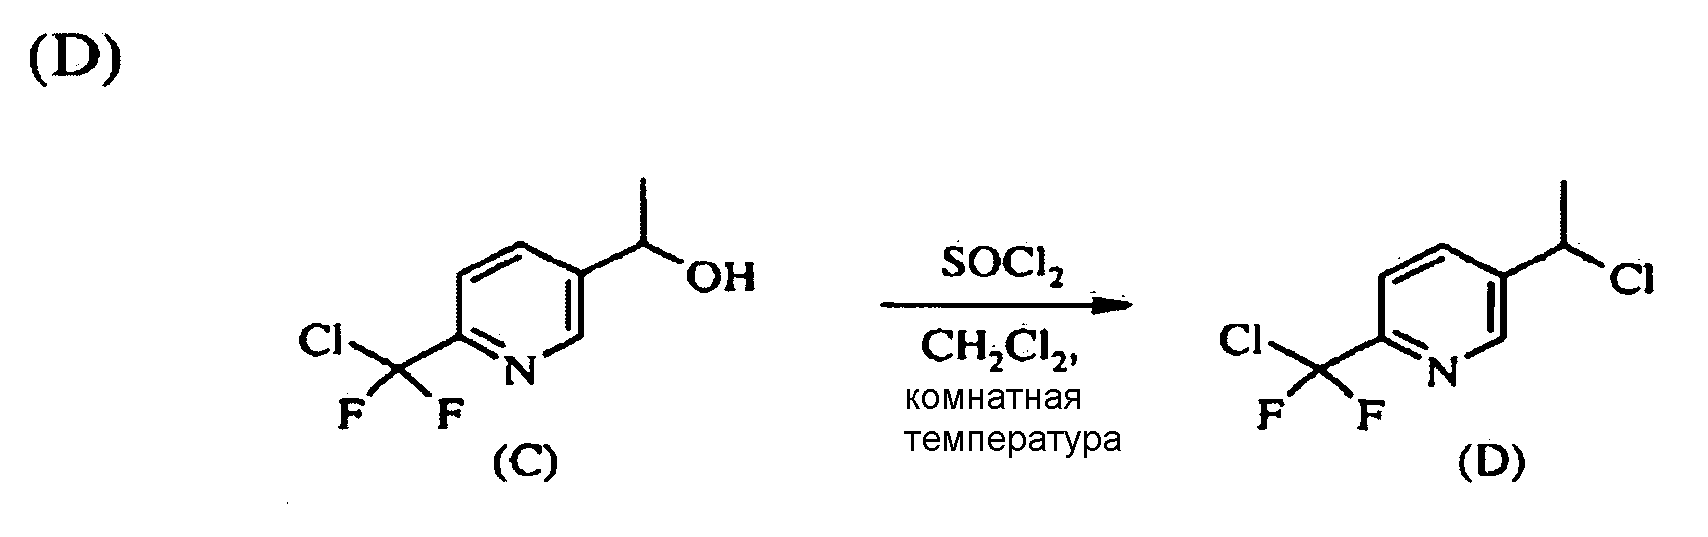 Тиометоксид натрия. Никотинонитрил. Пиридин с хлором. Метил пиридин cl2. Этил натрия